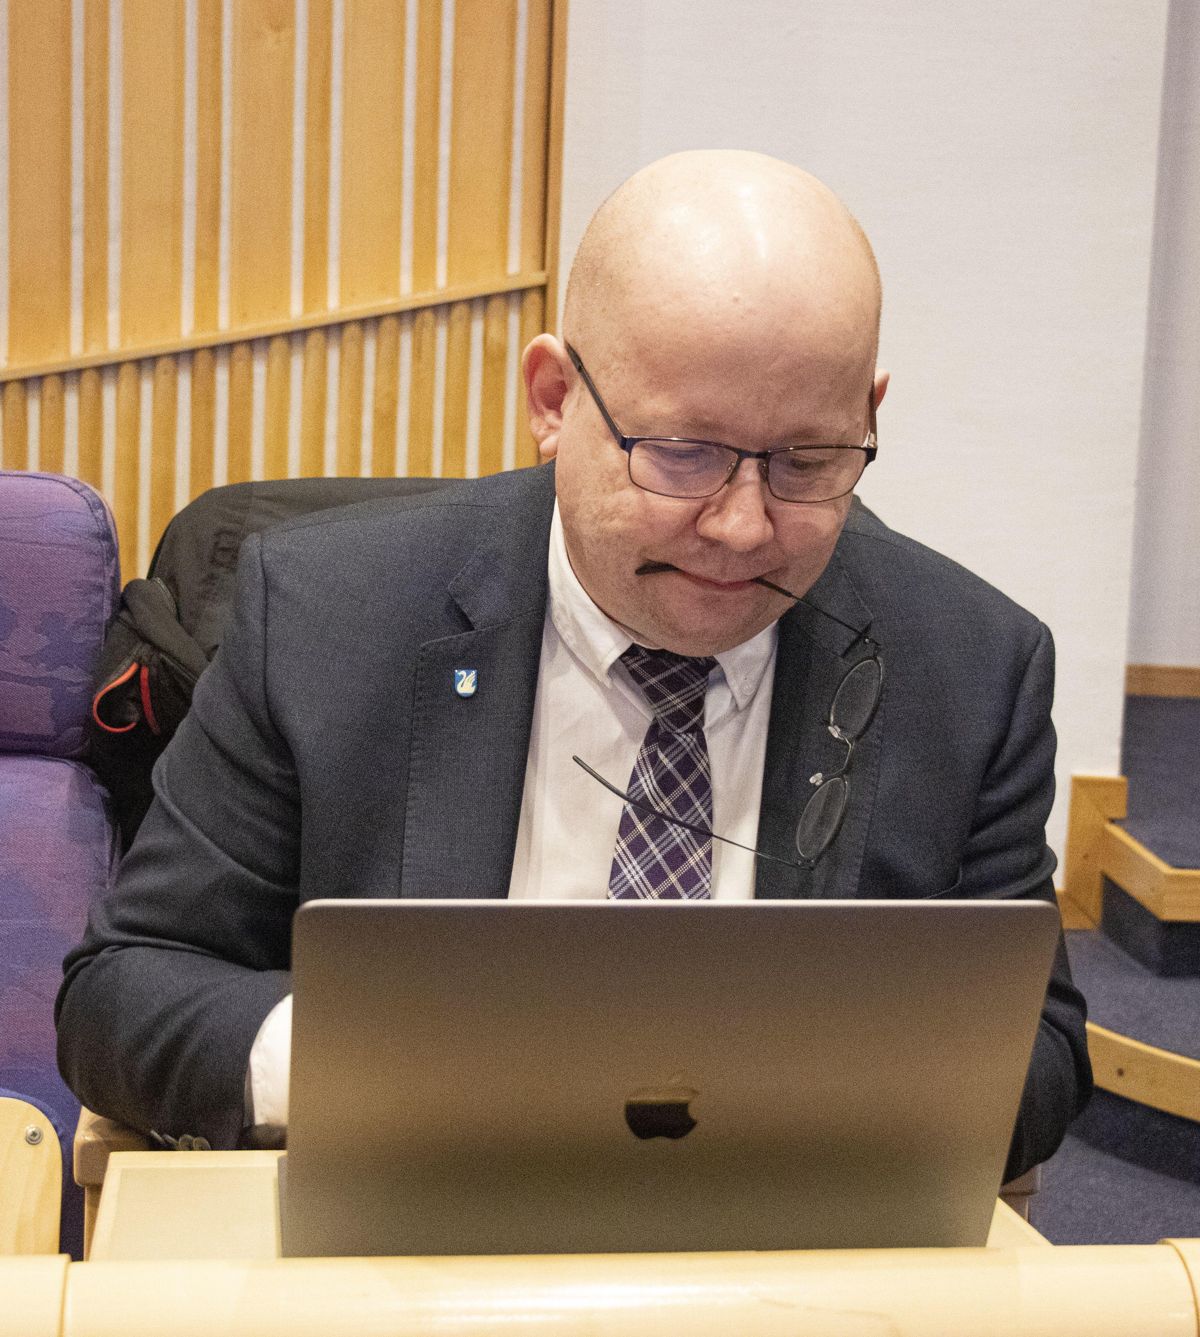 – Klimasatsmidlene har vært svært viktige for oss og kommunene i vår region, sier Gjøvik-ordfører Torvild Sveen (Sp).